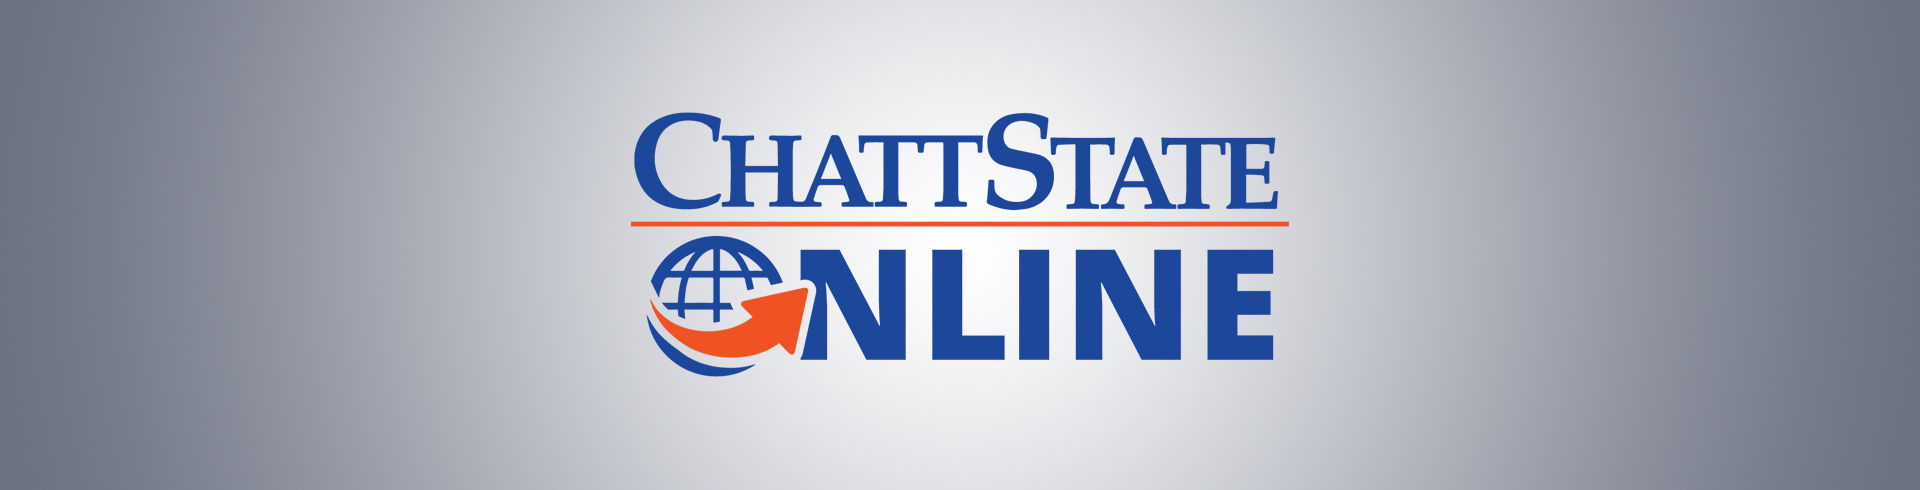 ChattState Online logo banner